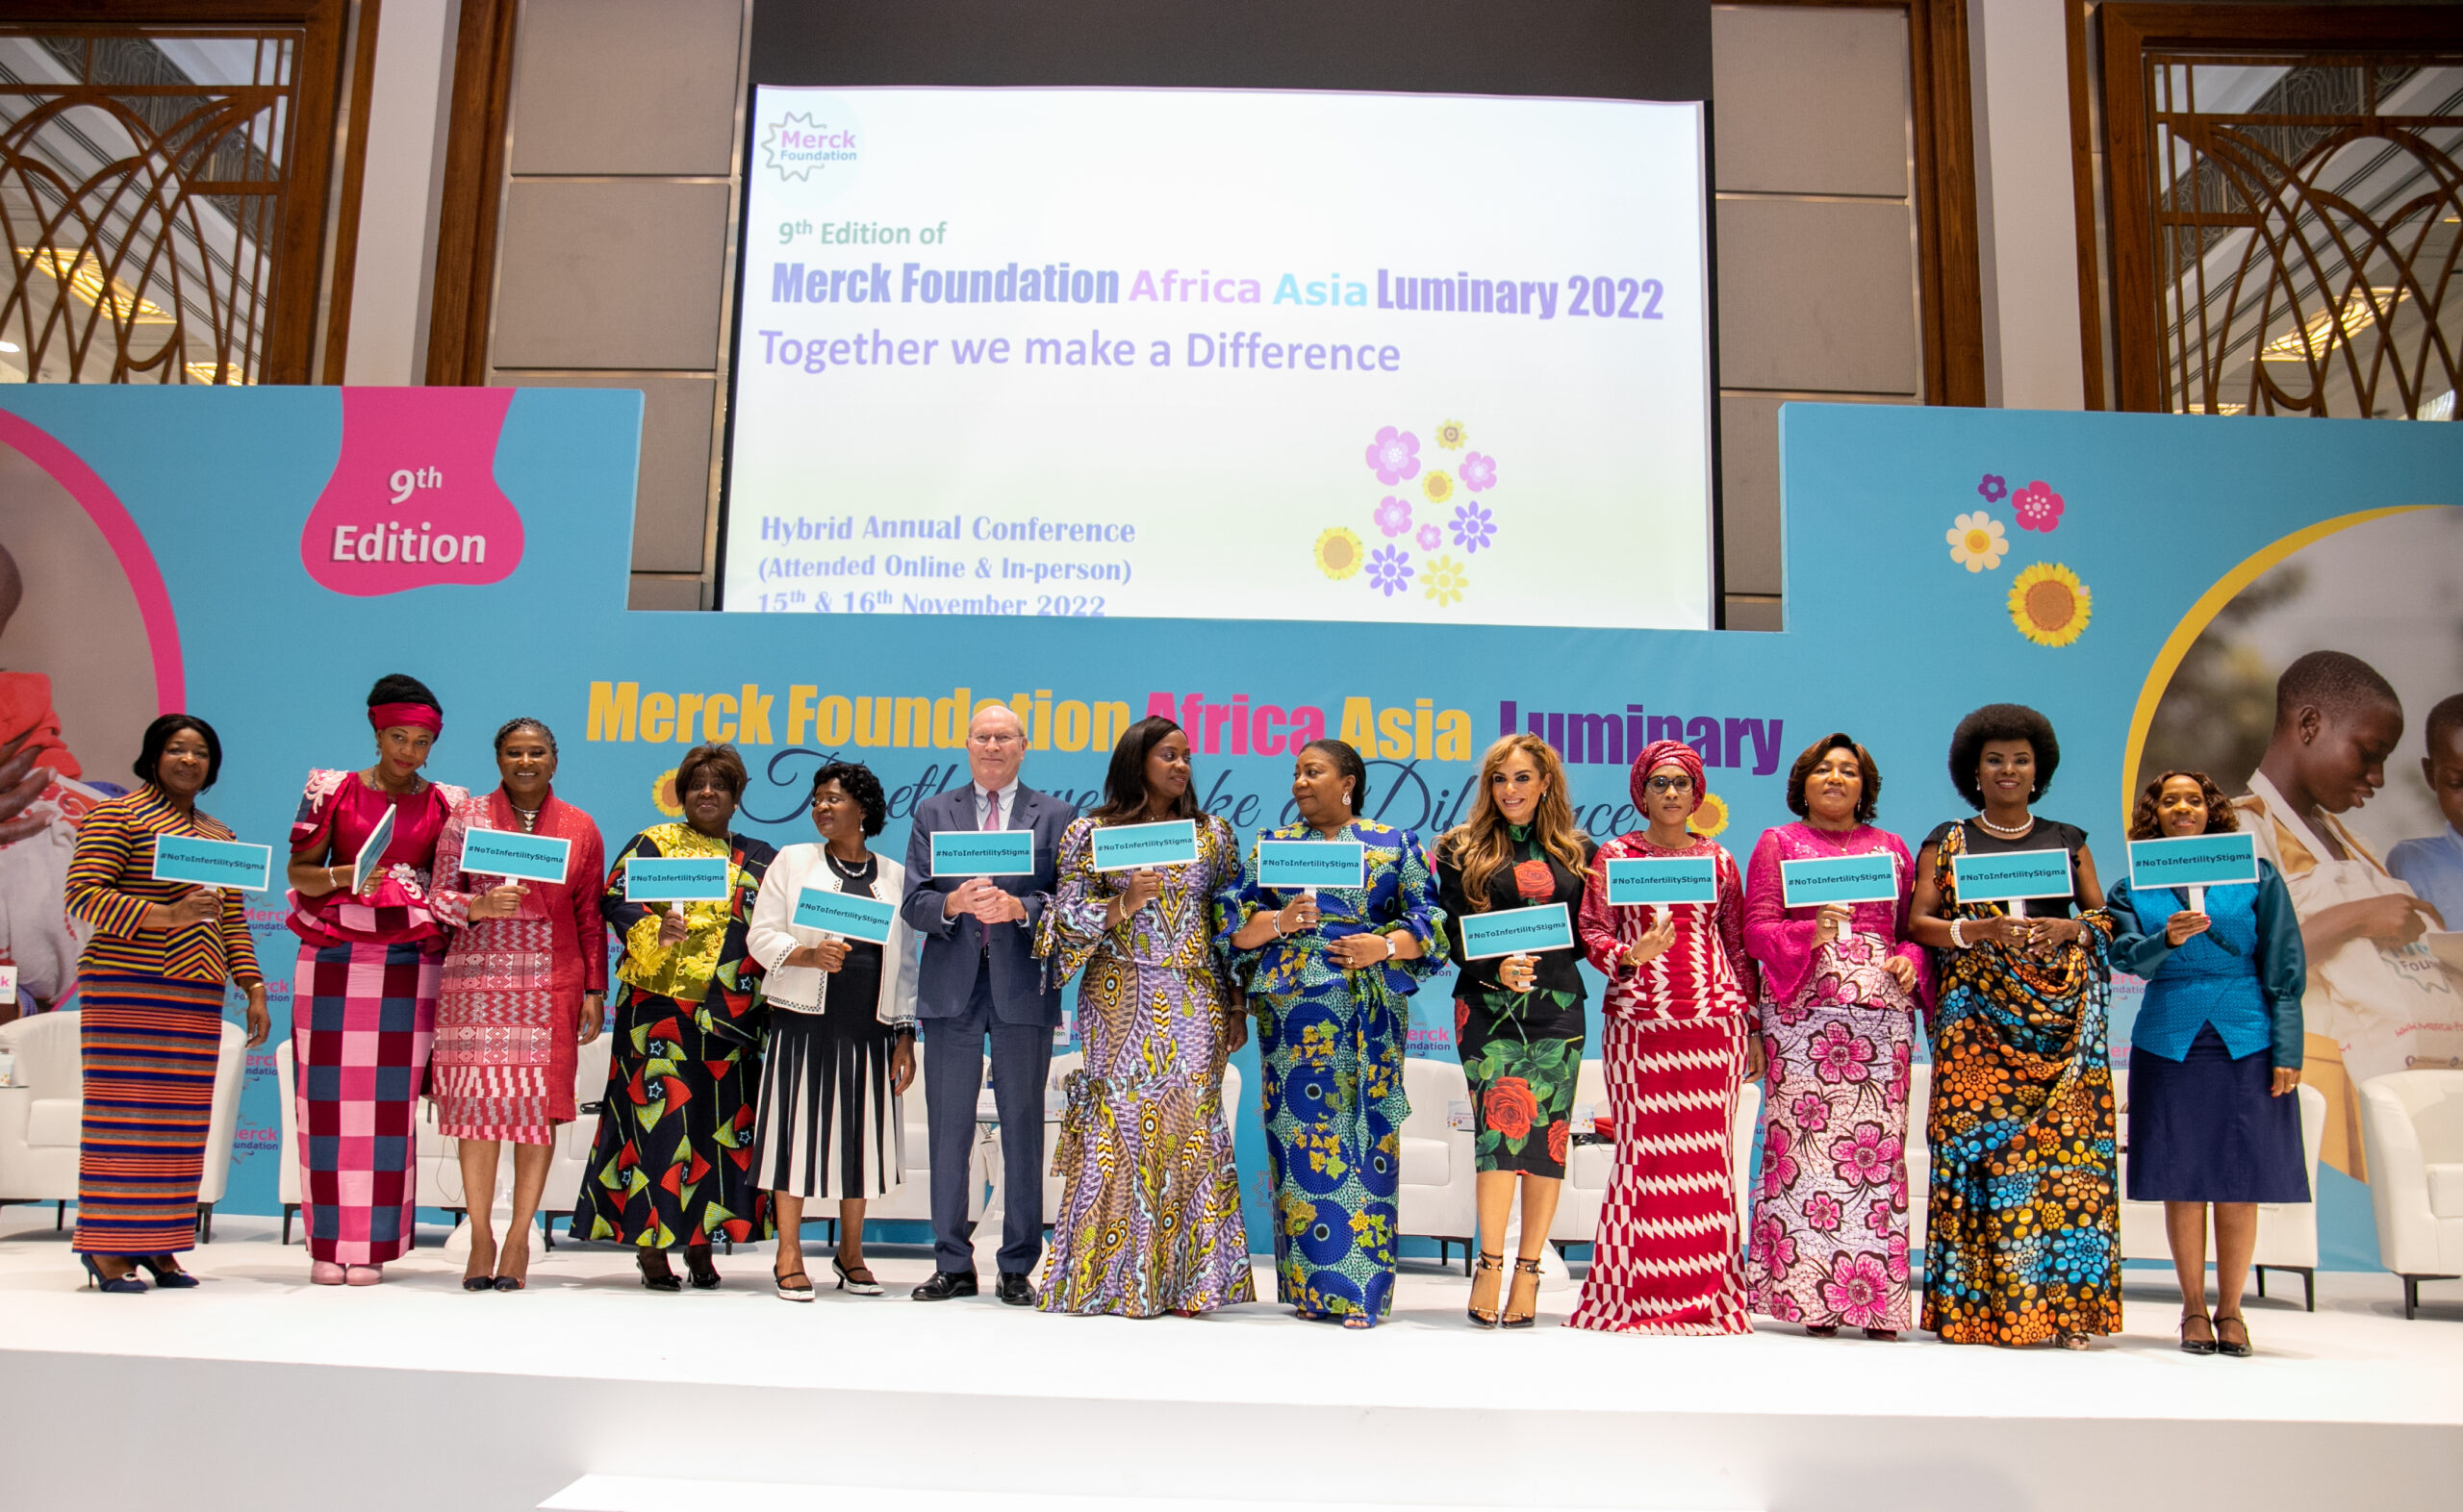 La Première Dame a participé à la 9ème édition de la Conférence Annuelle Africa Asia Luminary de Merck Foundation à Dubai